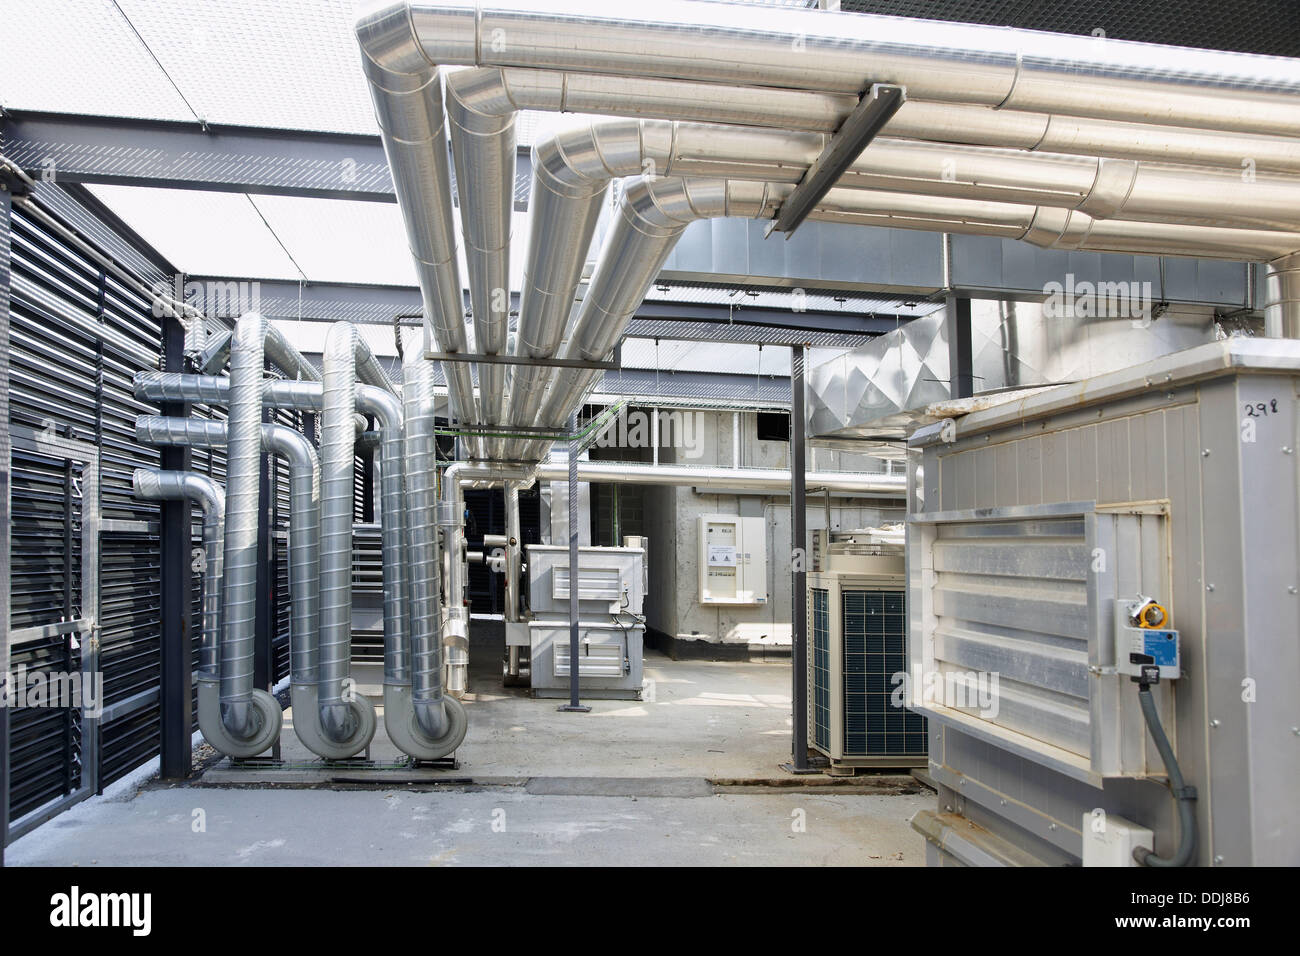 Instalación industrial de aire acondicionado en el techo del edificio,  Donostia, San Sebastián, Gipuzkoa, País Vasco, España Fotografía de stock -  Alamy